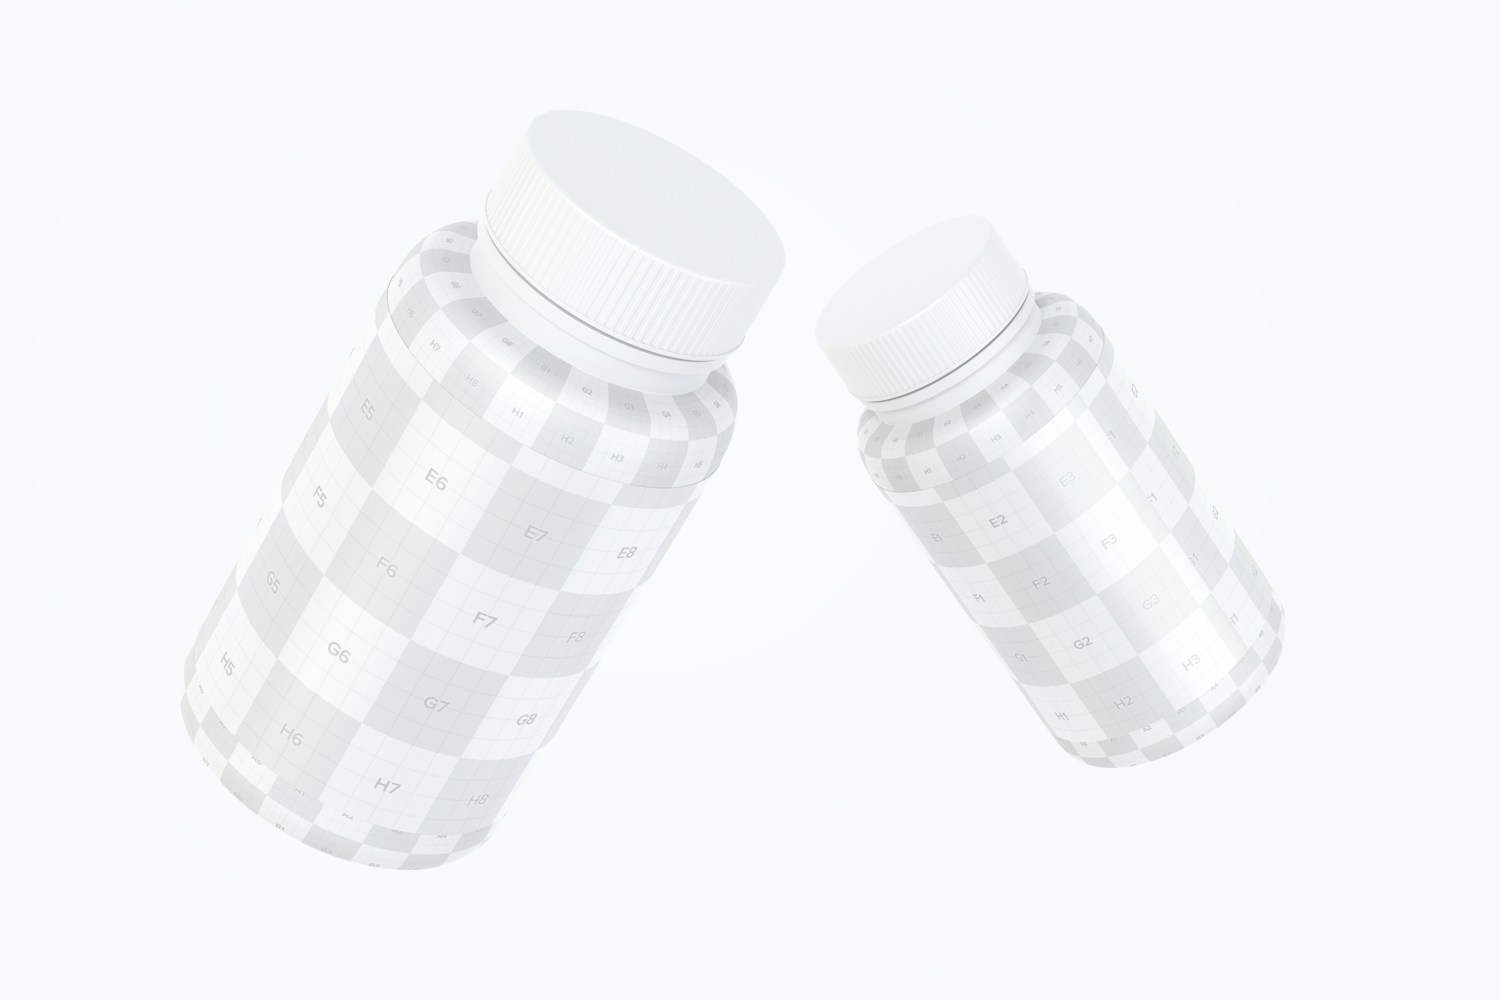 Plastic Pill Jars Mockup, Floating